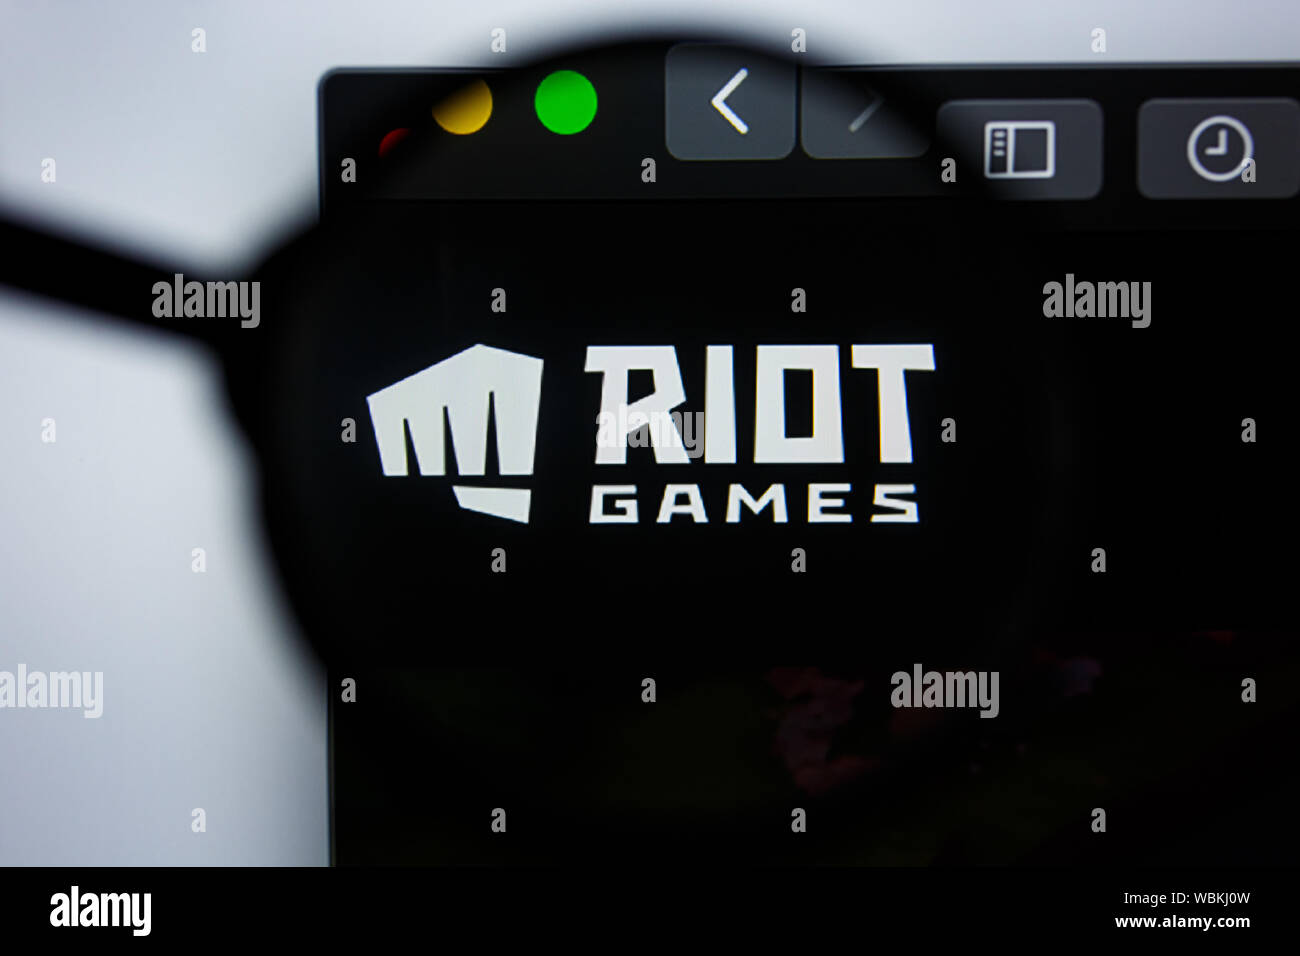 Riot Games (@riotgames) / X